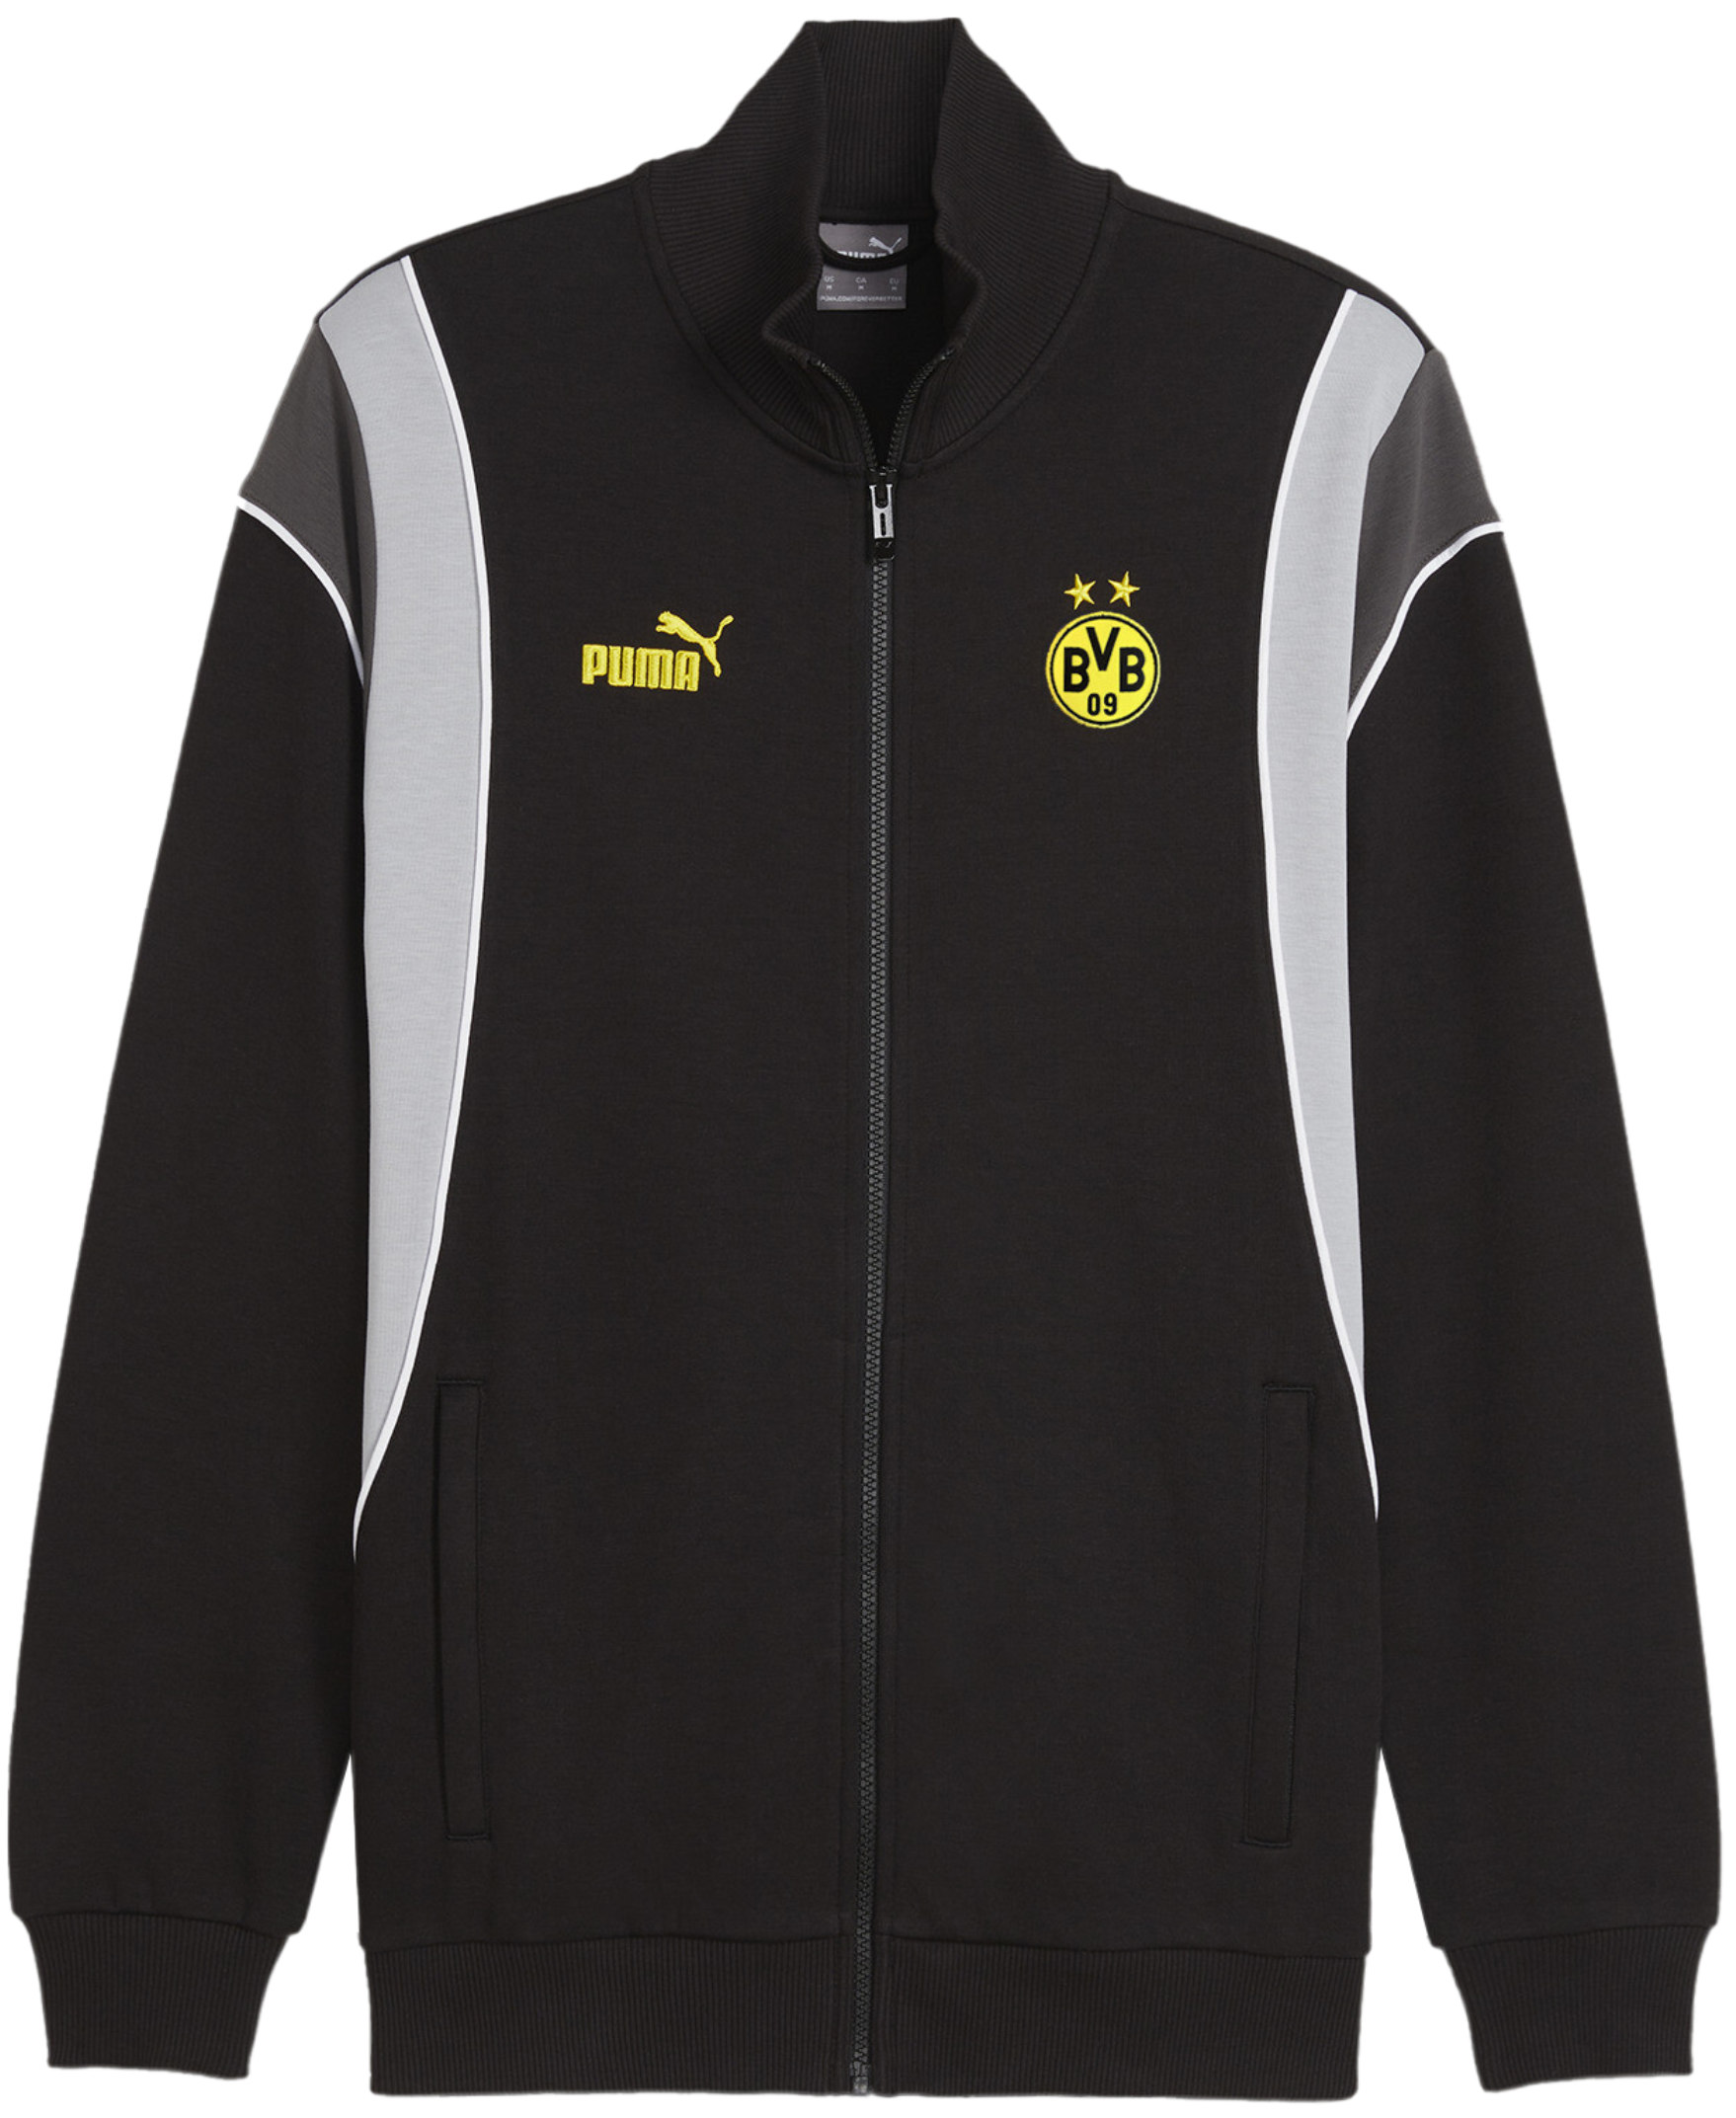 Takki Puma BVB Dortmund Ftbl Archive Trainings jacket